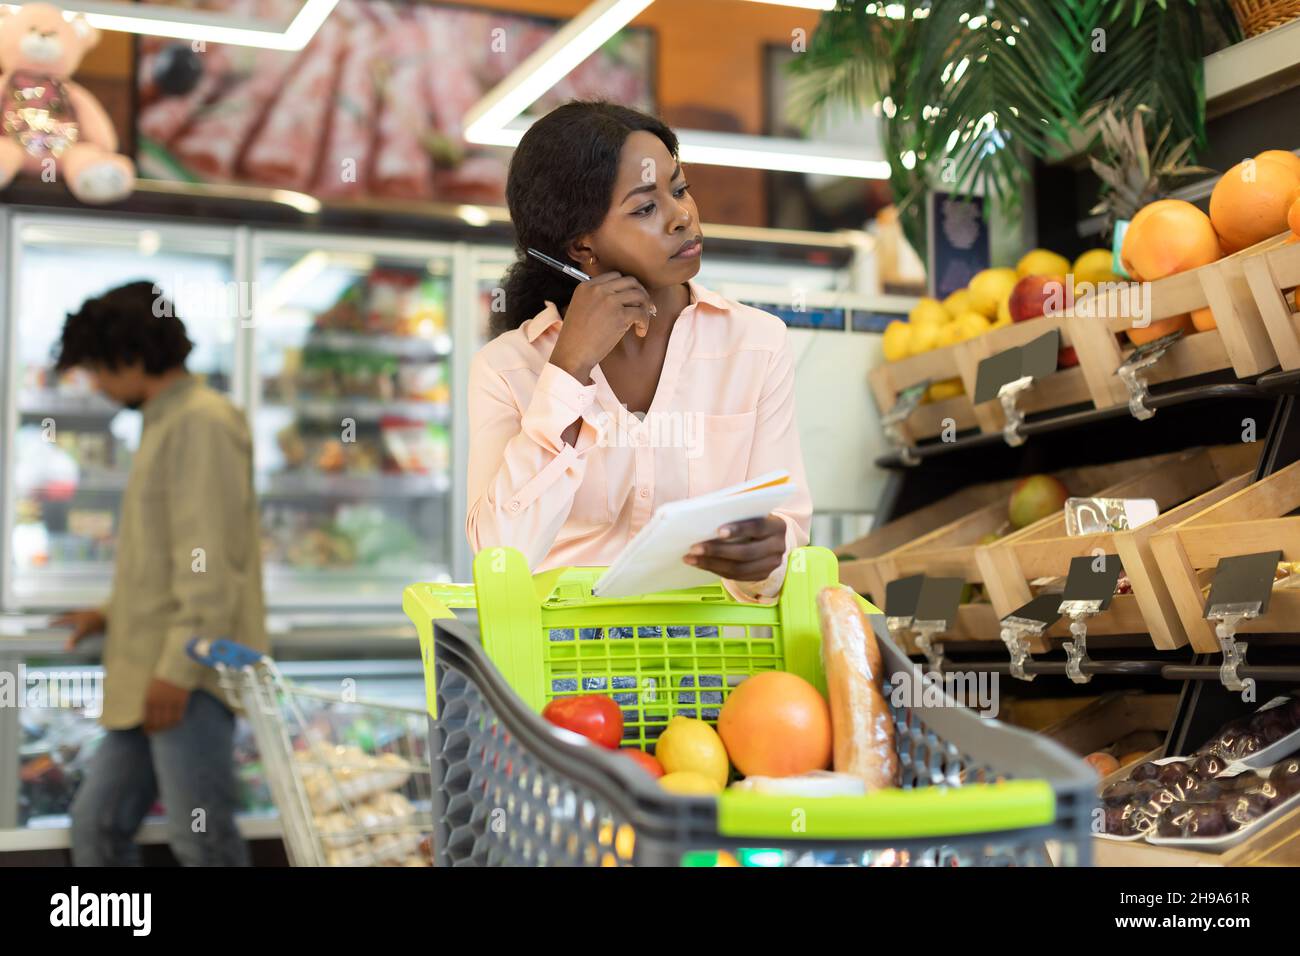 Black Lady Holding Lebensmittelgeschäft Einkaufsliste Berechnung Der Preise Im Supermarkt Stockfoto